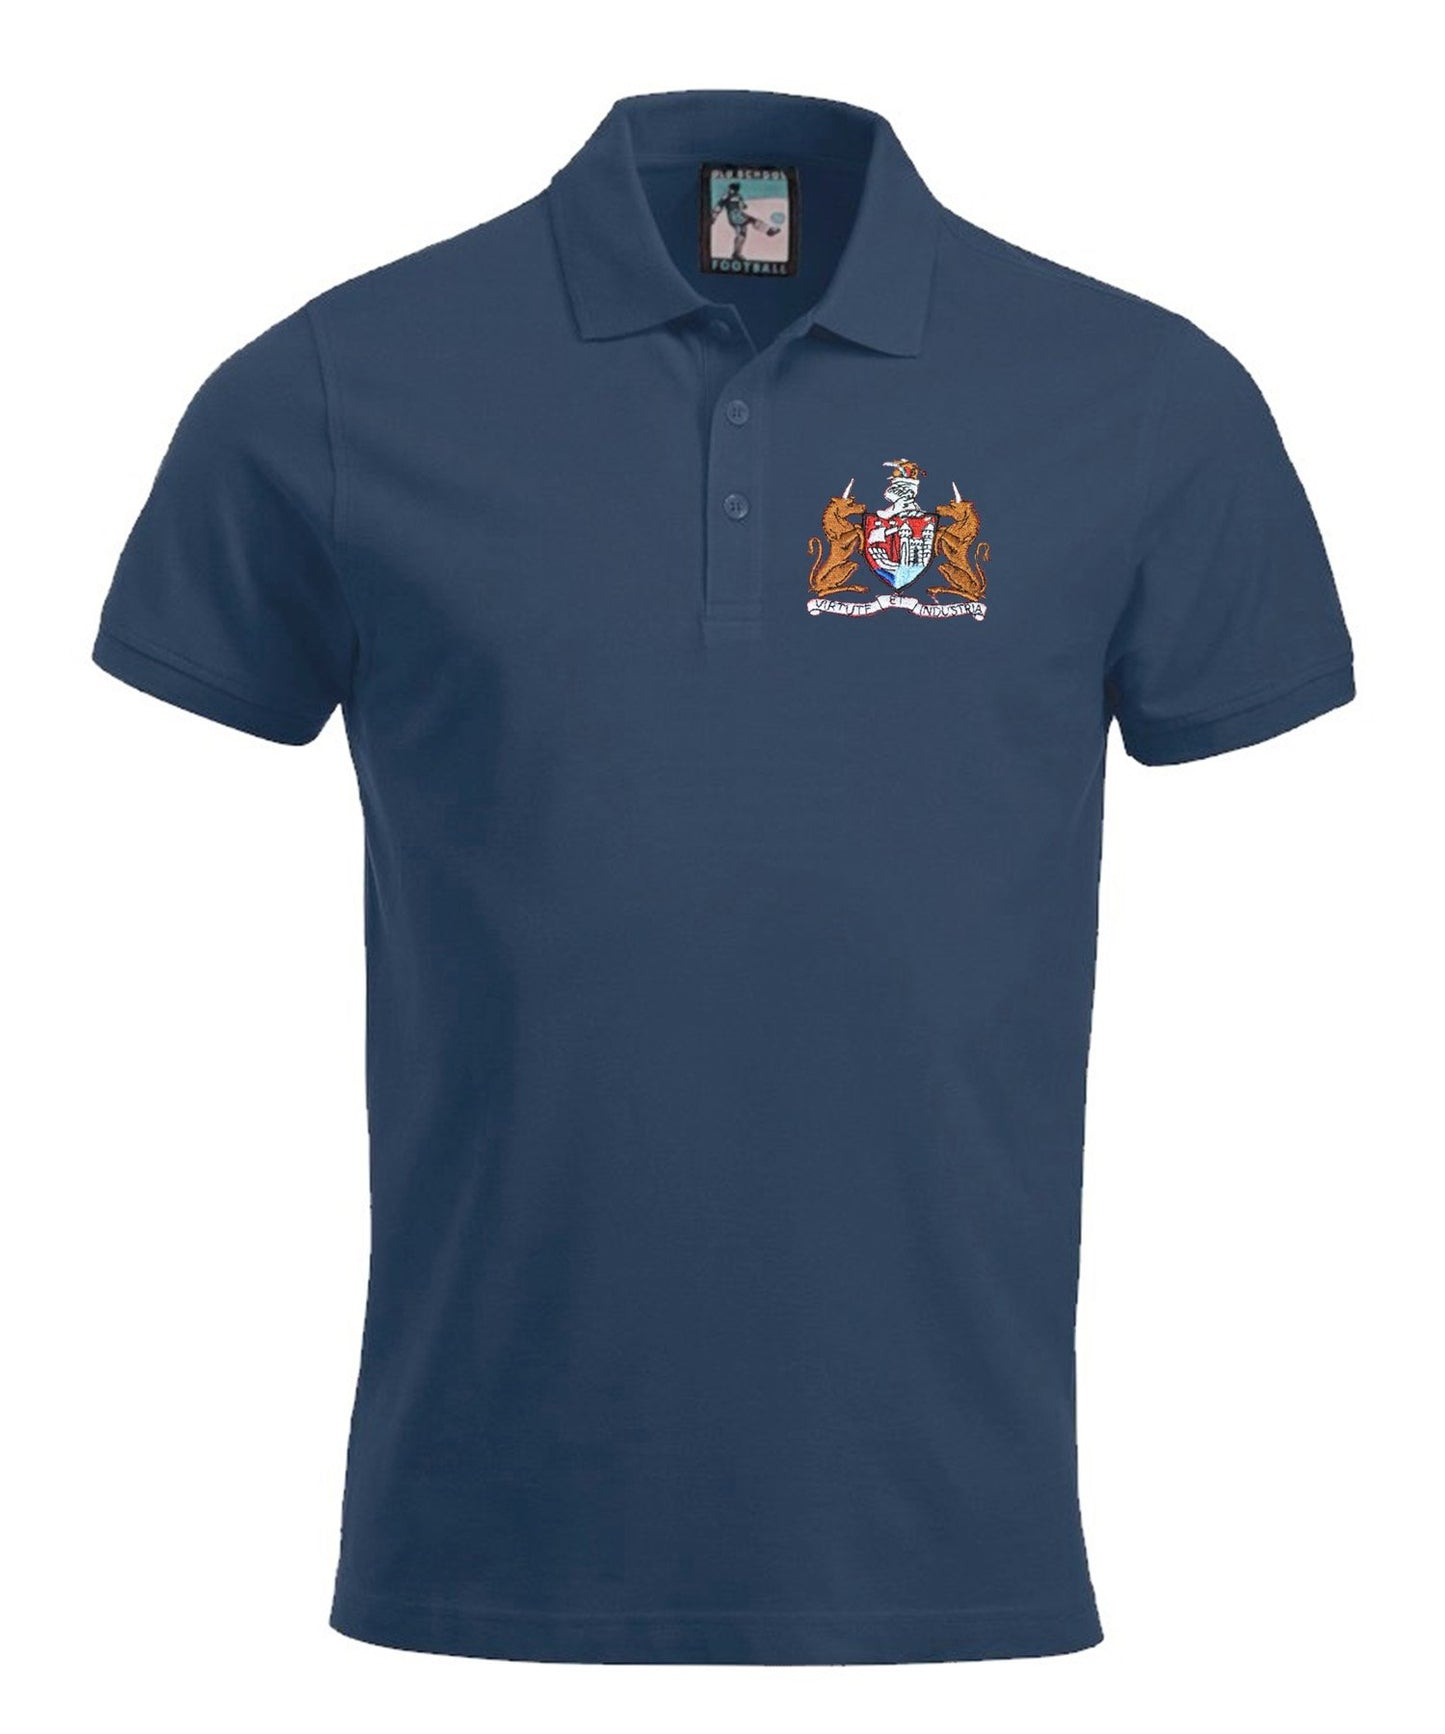 Bristol City Retro Football Polo Shirt 1973 - Polo